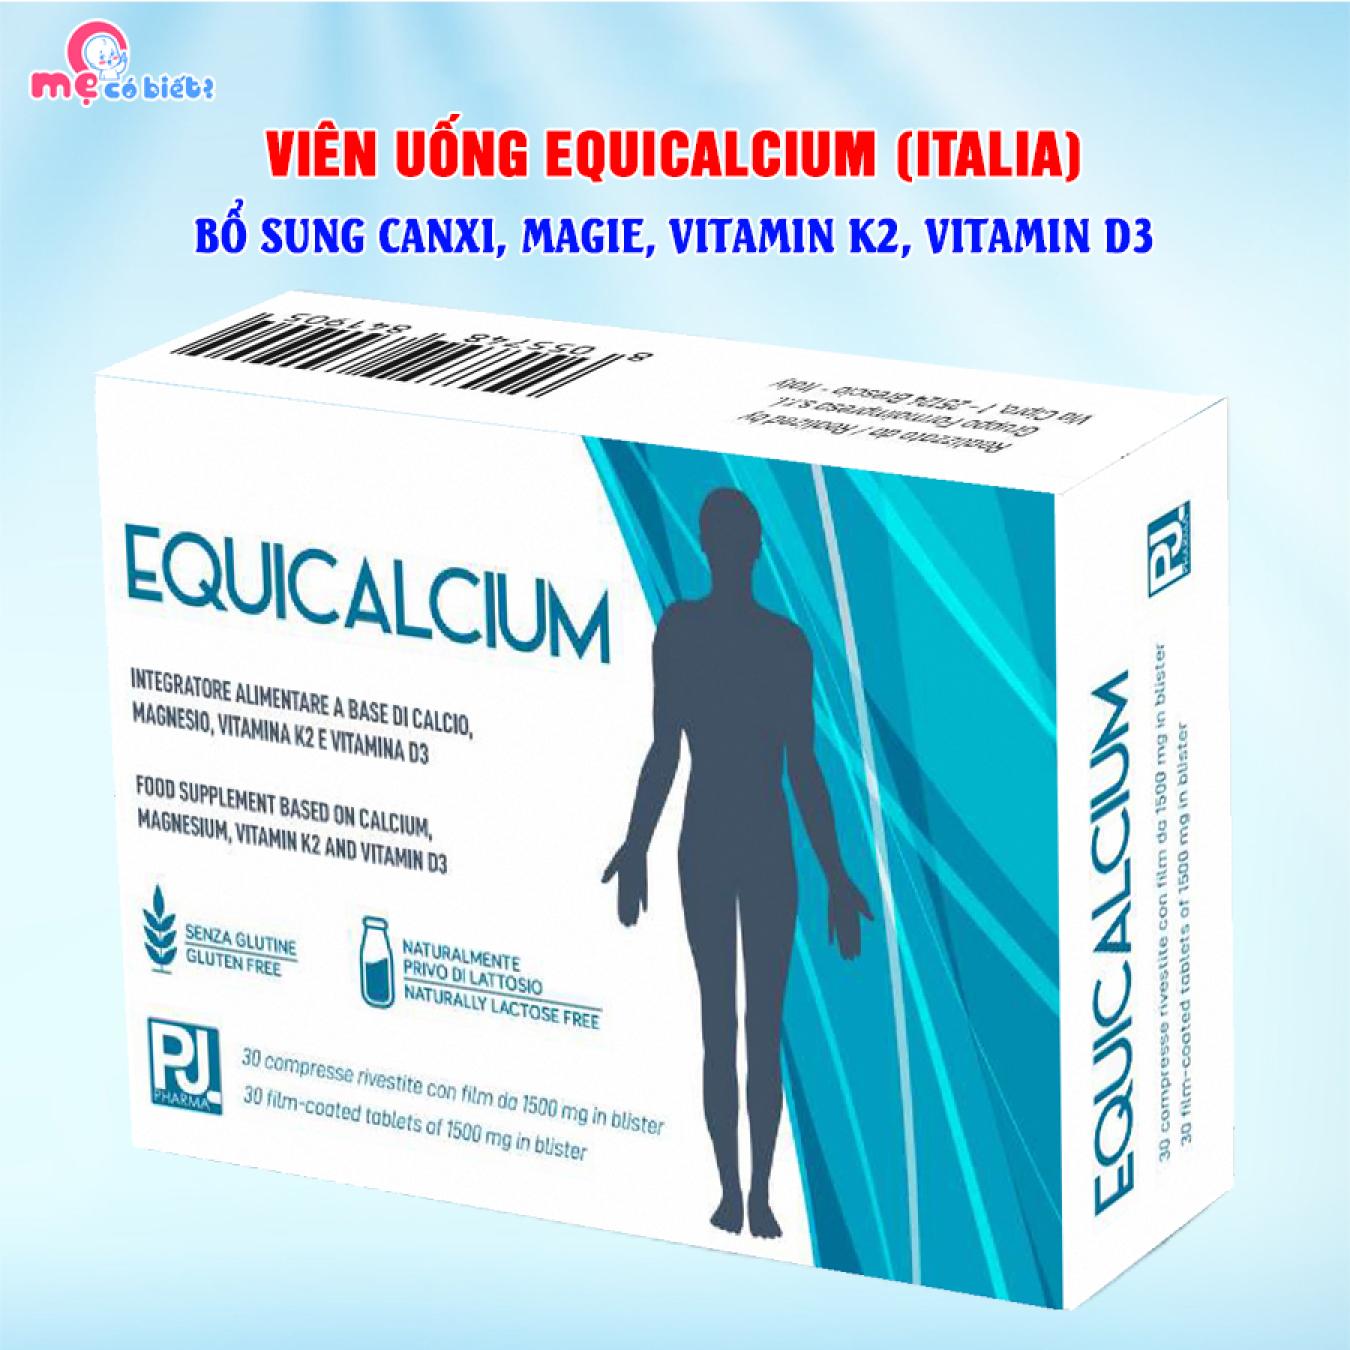 Viên uống EQUICALCIUM nhập khẩu Italy - Bổ sung canxi, Vitamin D3 K2, Magie